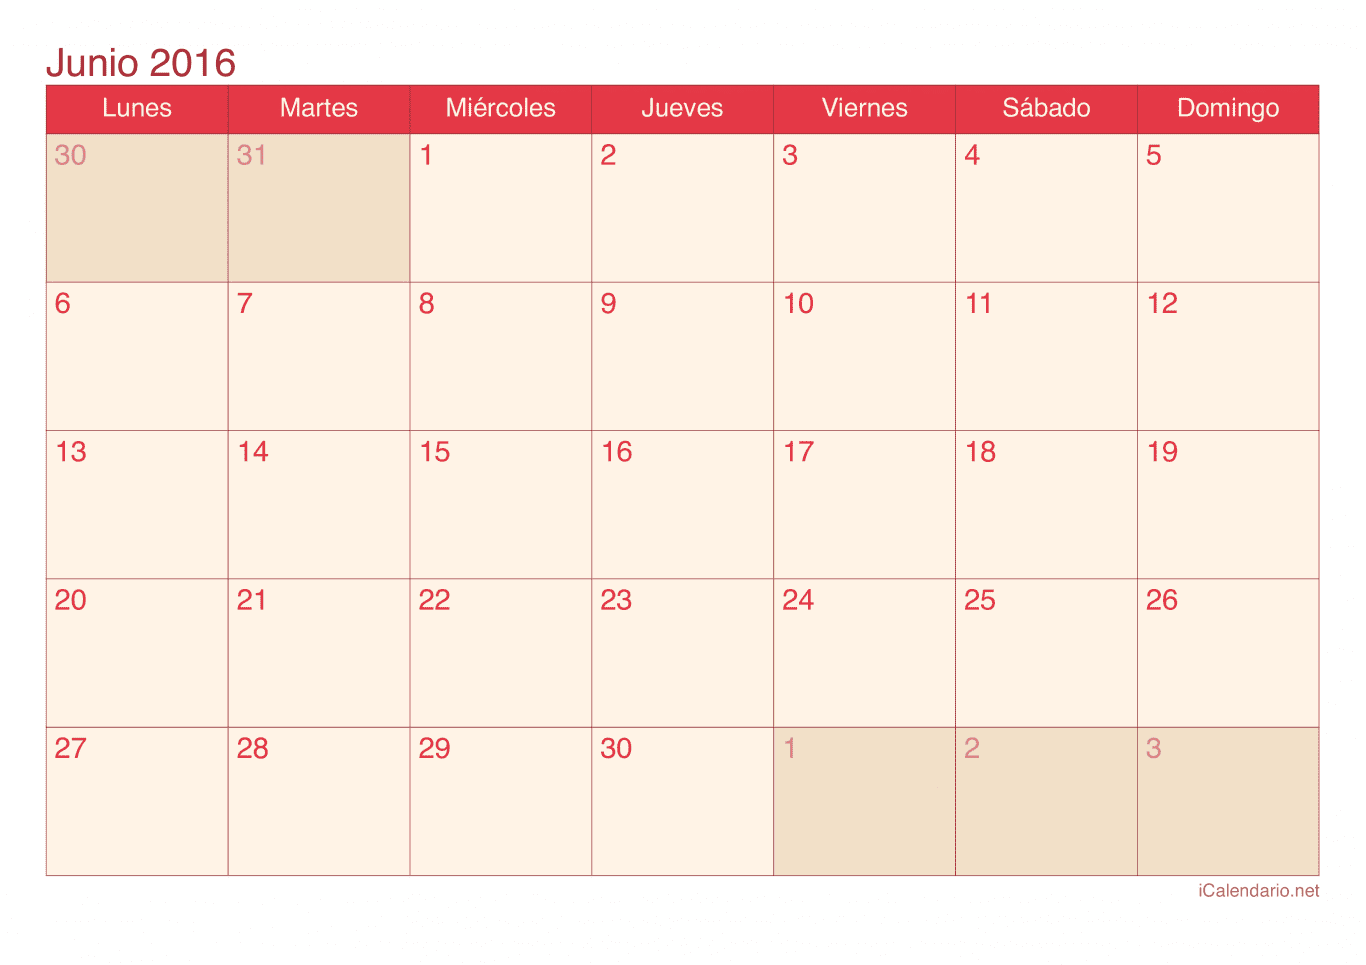 Calendario de junio 2016 - Cherry